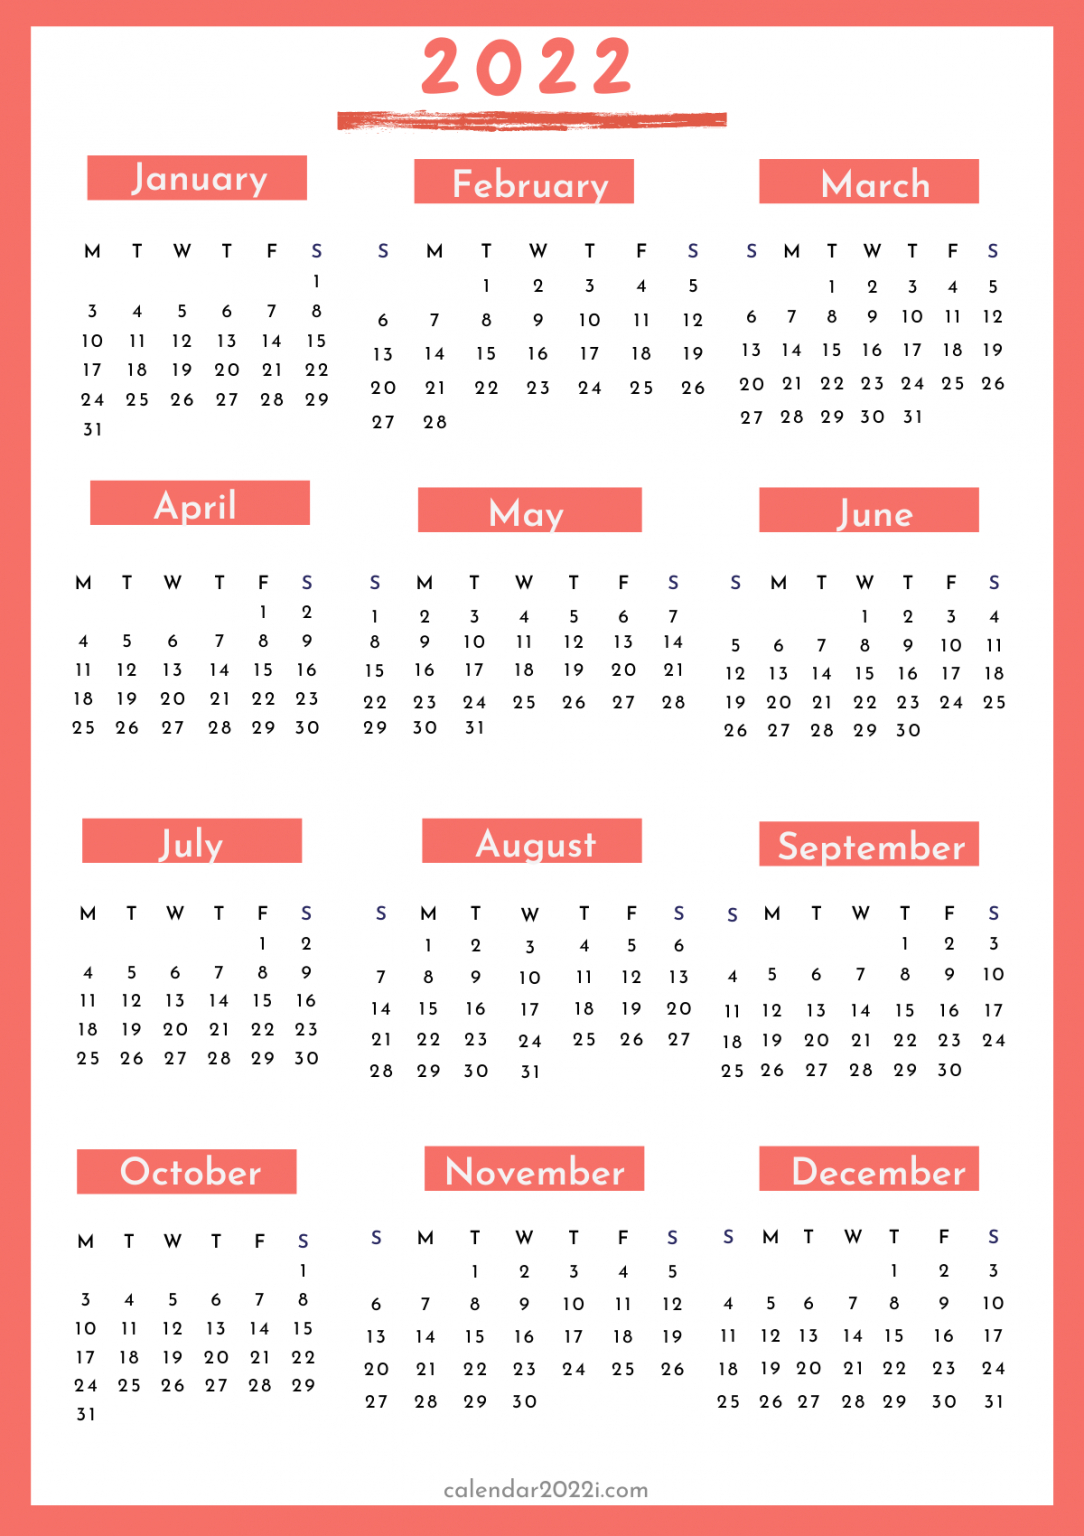 Vertical 2022 Printable Calendar | Calendar 2022 within Free Printable Calendar 2022 Vertical